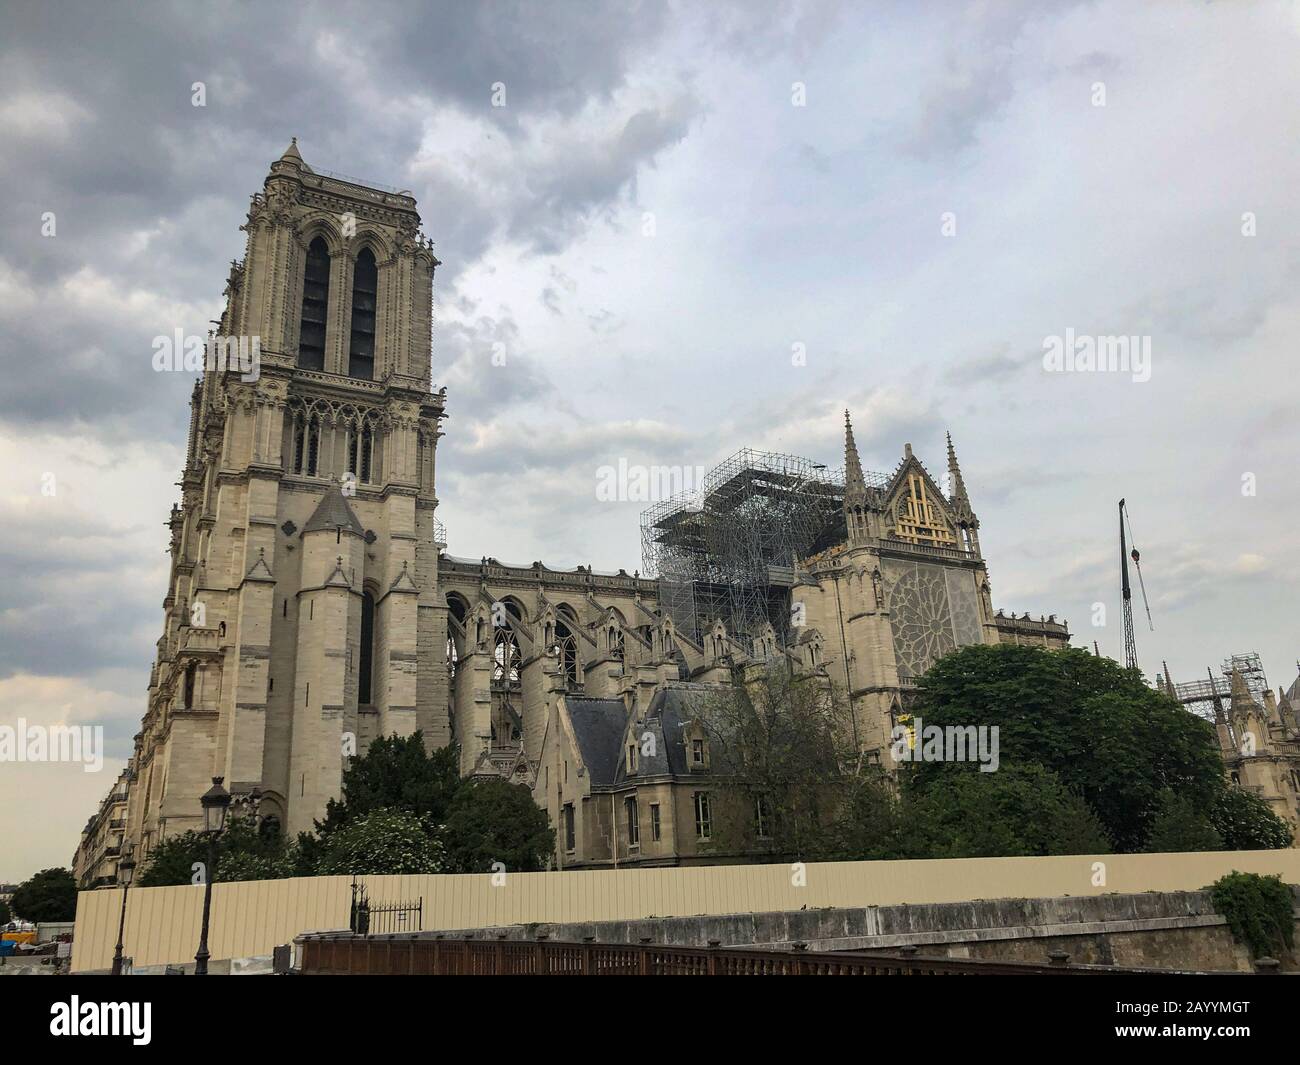 Paris, Frankreich - 05.23.2019: Kathedrale Notre Dame in Paris befindet sich im Bau nach dem Großbrand, der das Dach der Kathedrale zerstörte Stockfoto